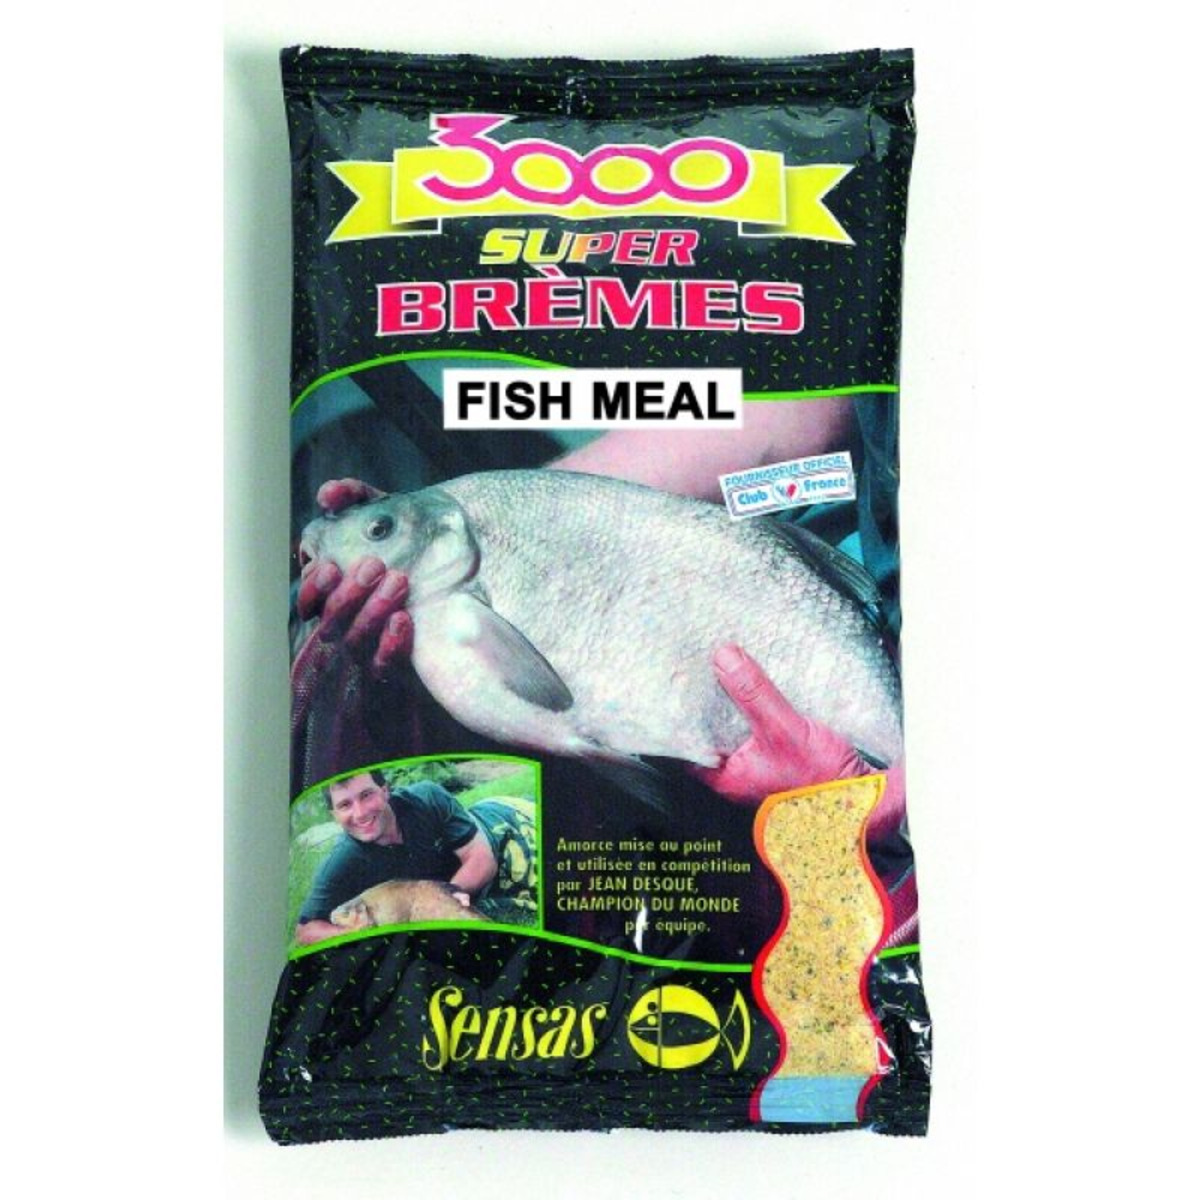 Sensas 3000 Super Bremes Fish Meal - 1 kg